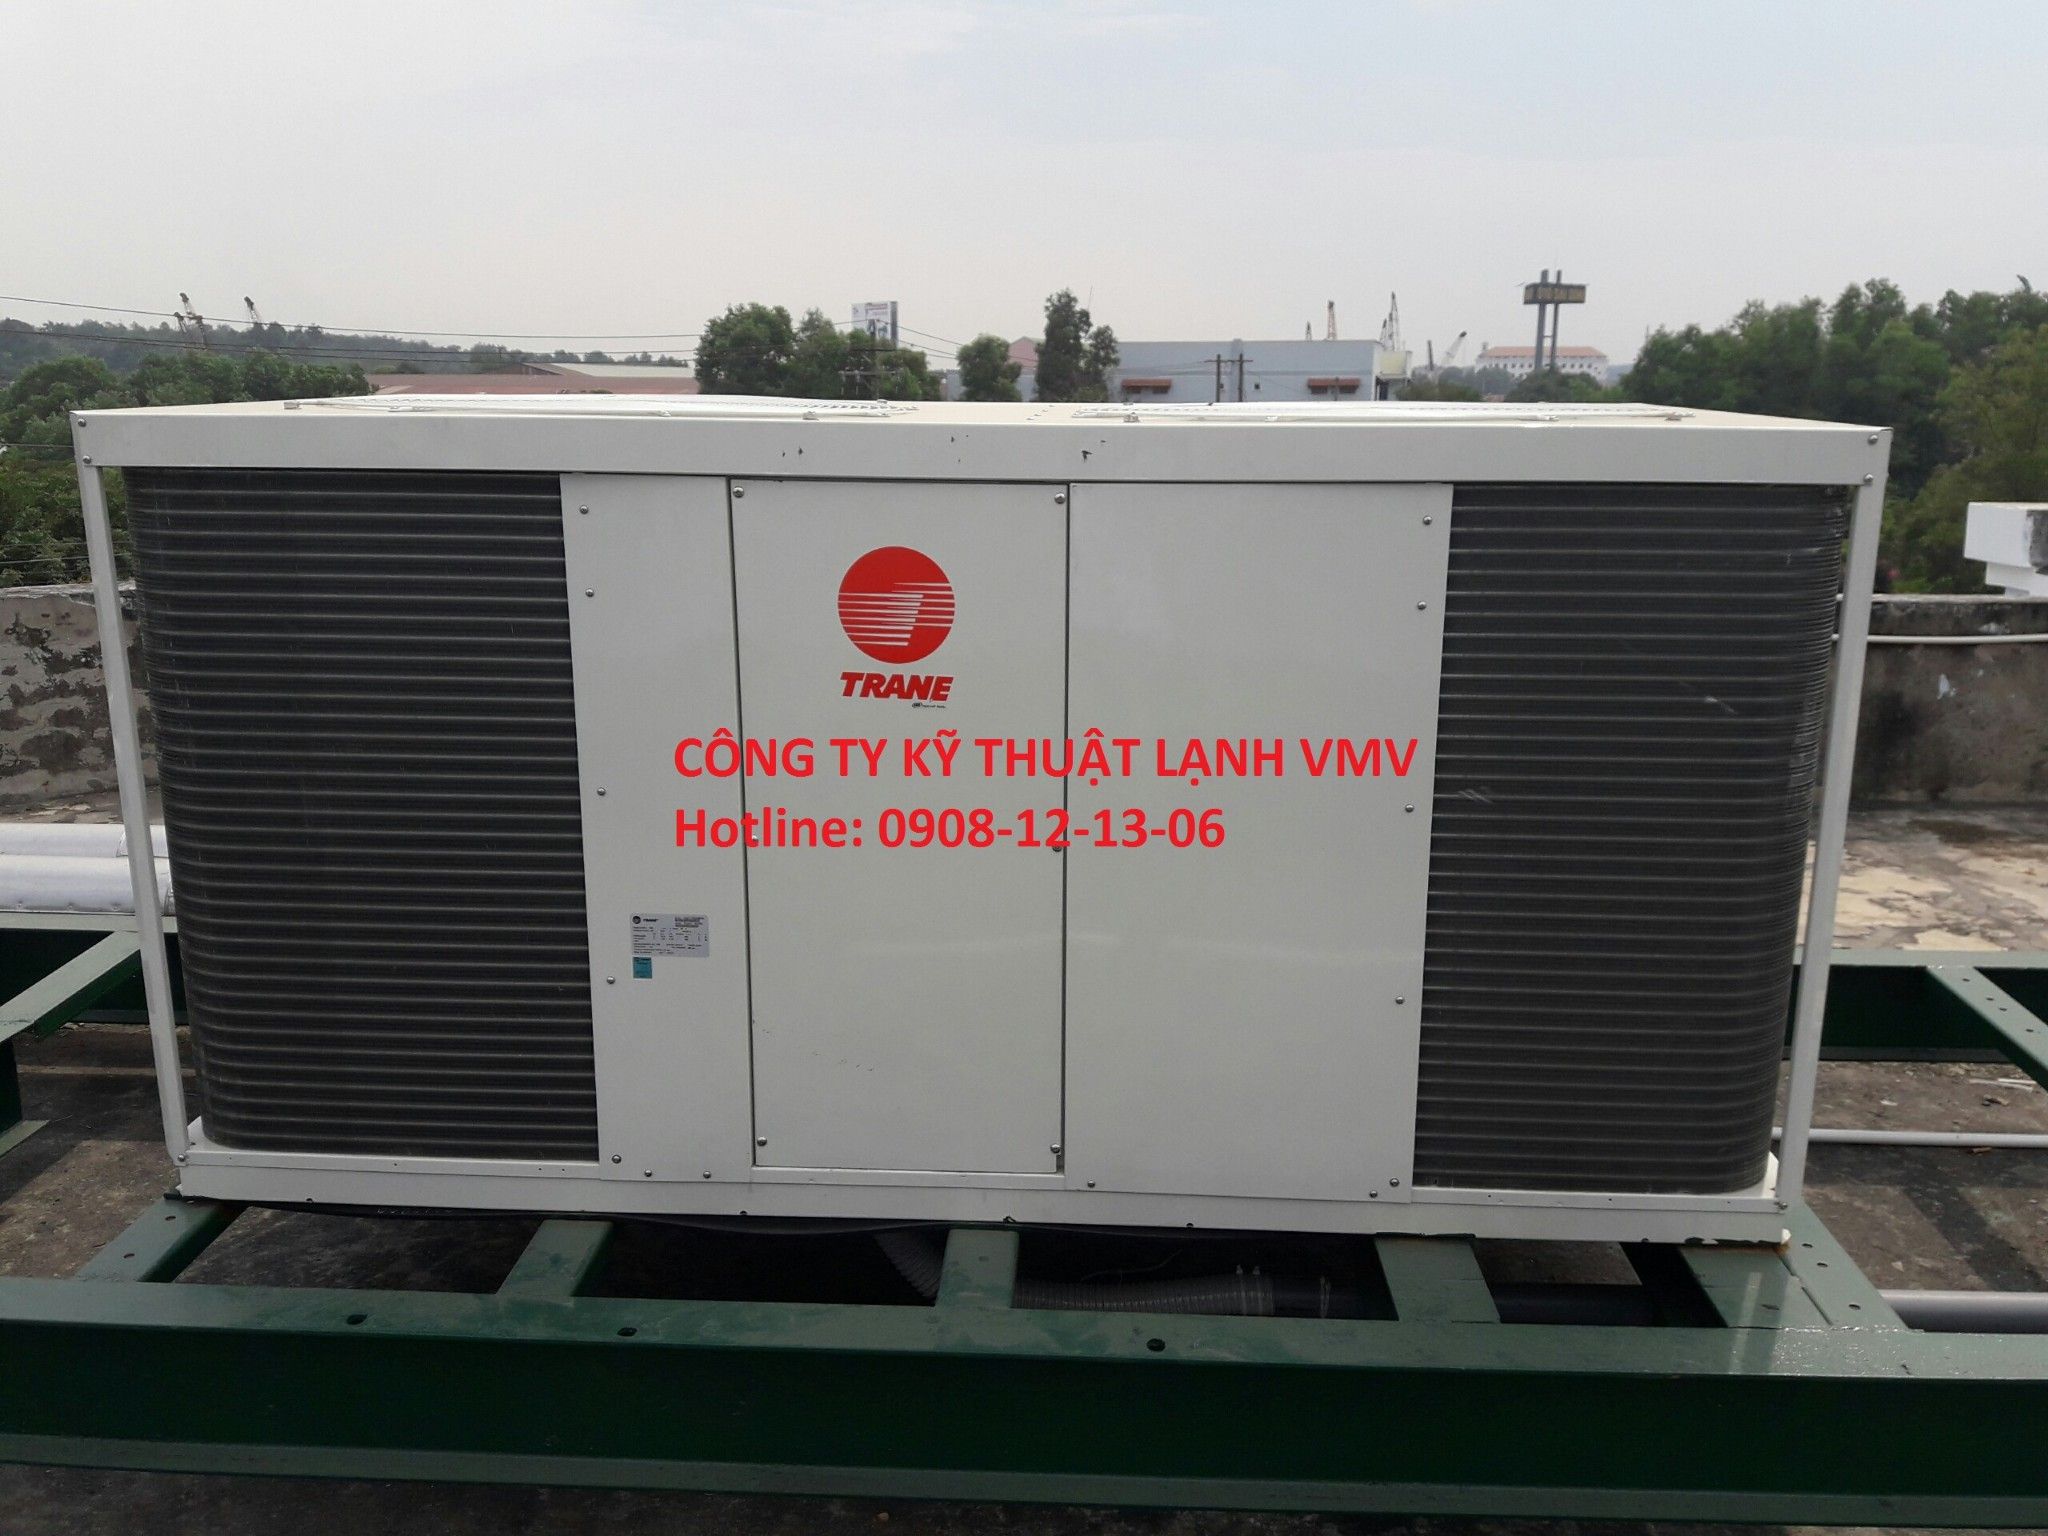 Chiller TRANE - máy làm lạnh nước mini giải nhiệt gió hãng Trane - CGAT065 - 7HP